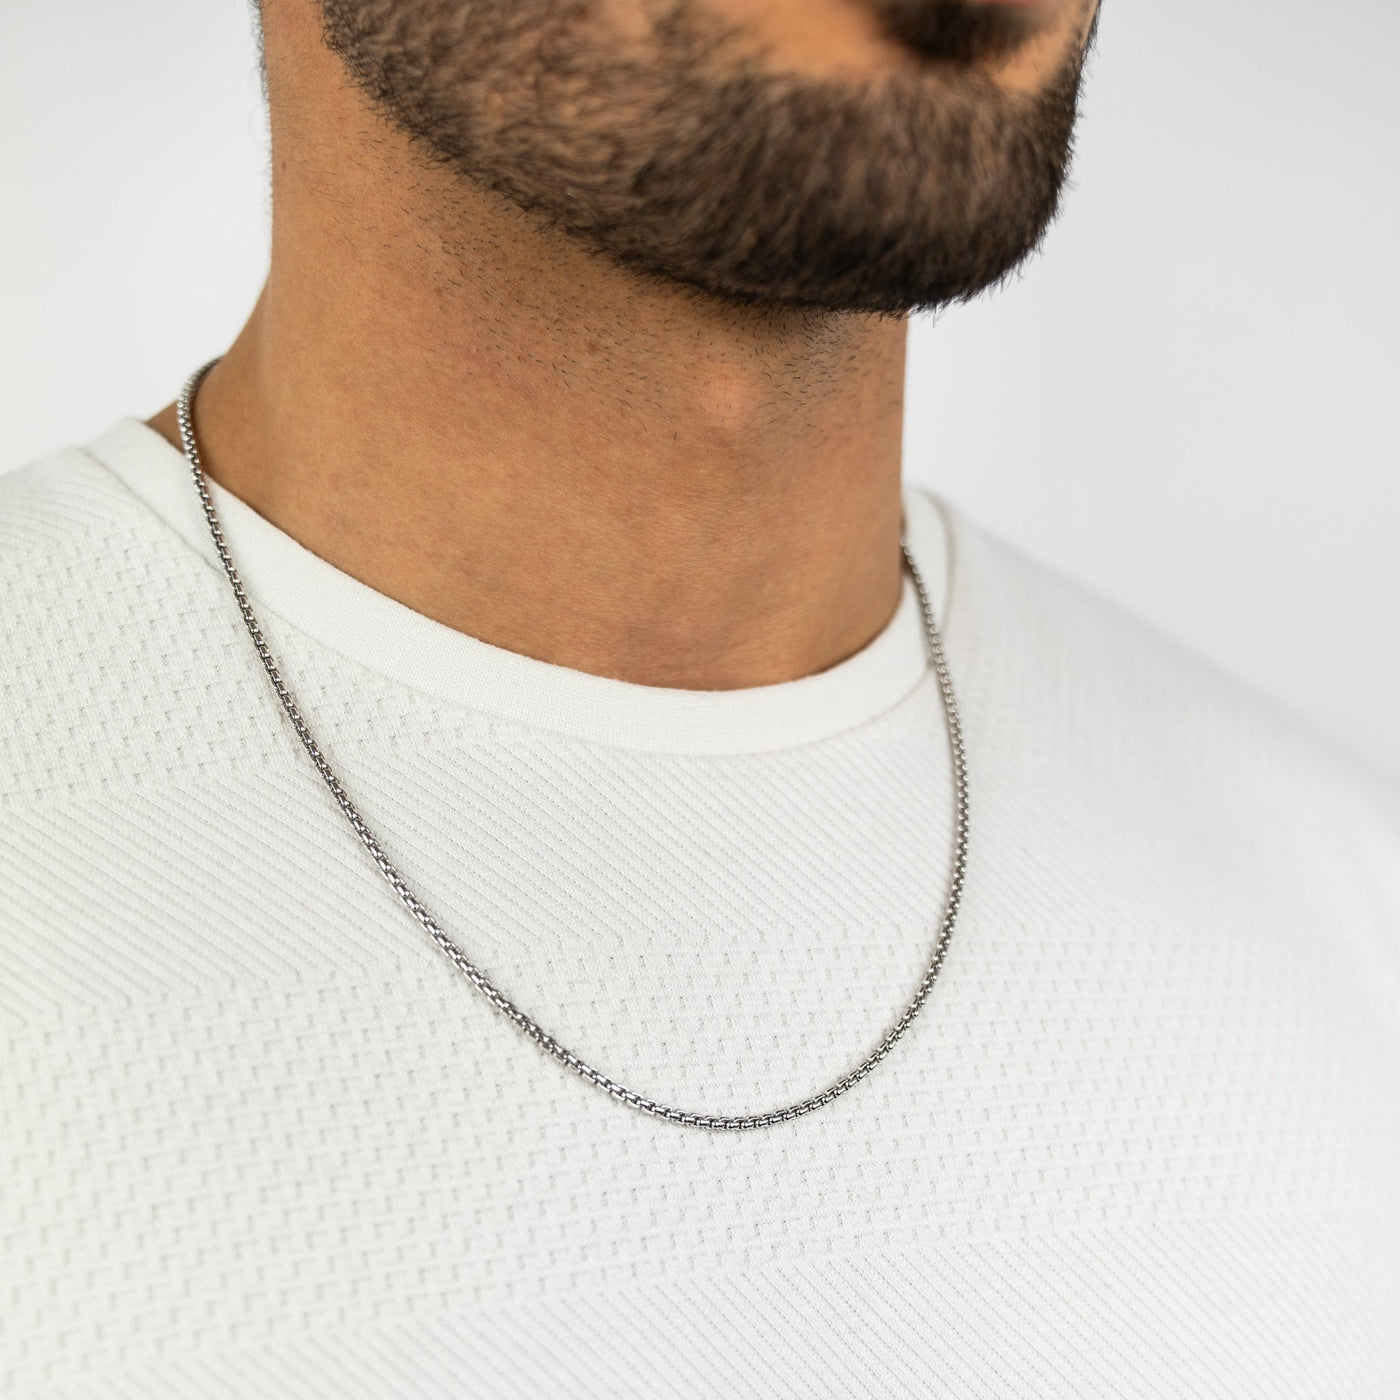 IDENTIM® Herren Halskette Silberkette 2.70mm Rhodiniert 925 Herrenkette Rund Silber Venezianerkette